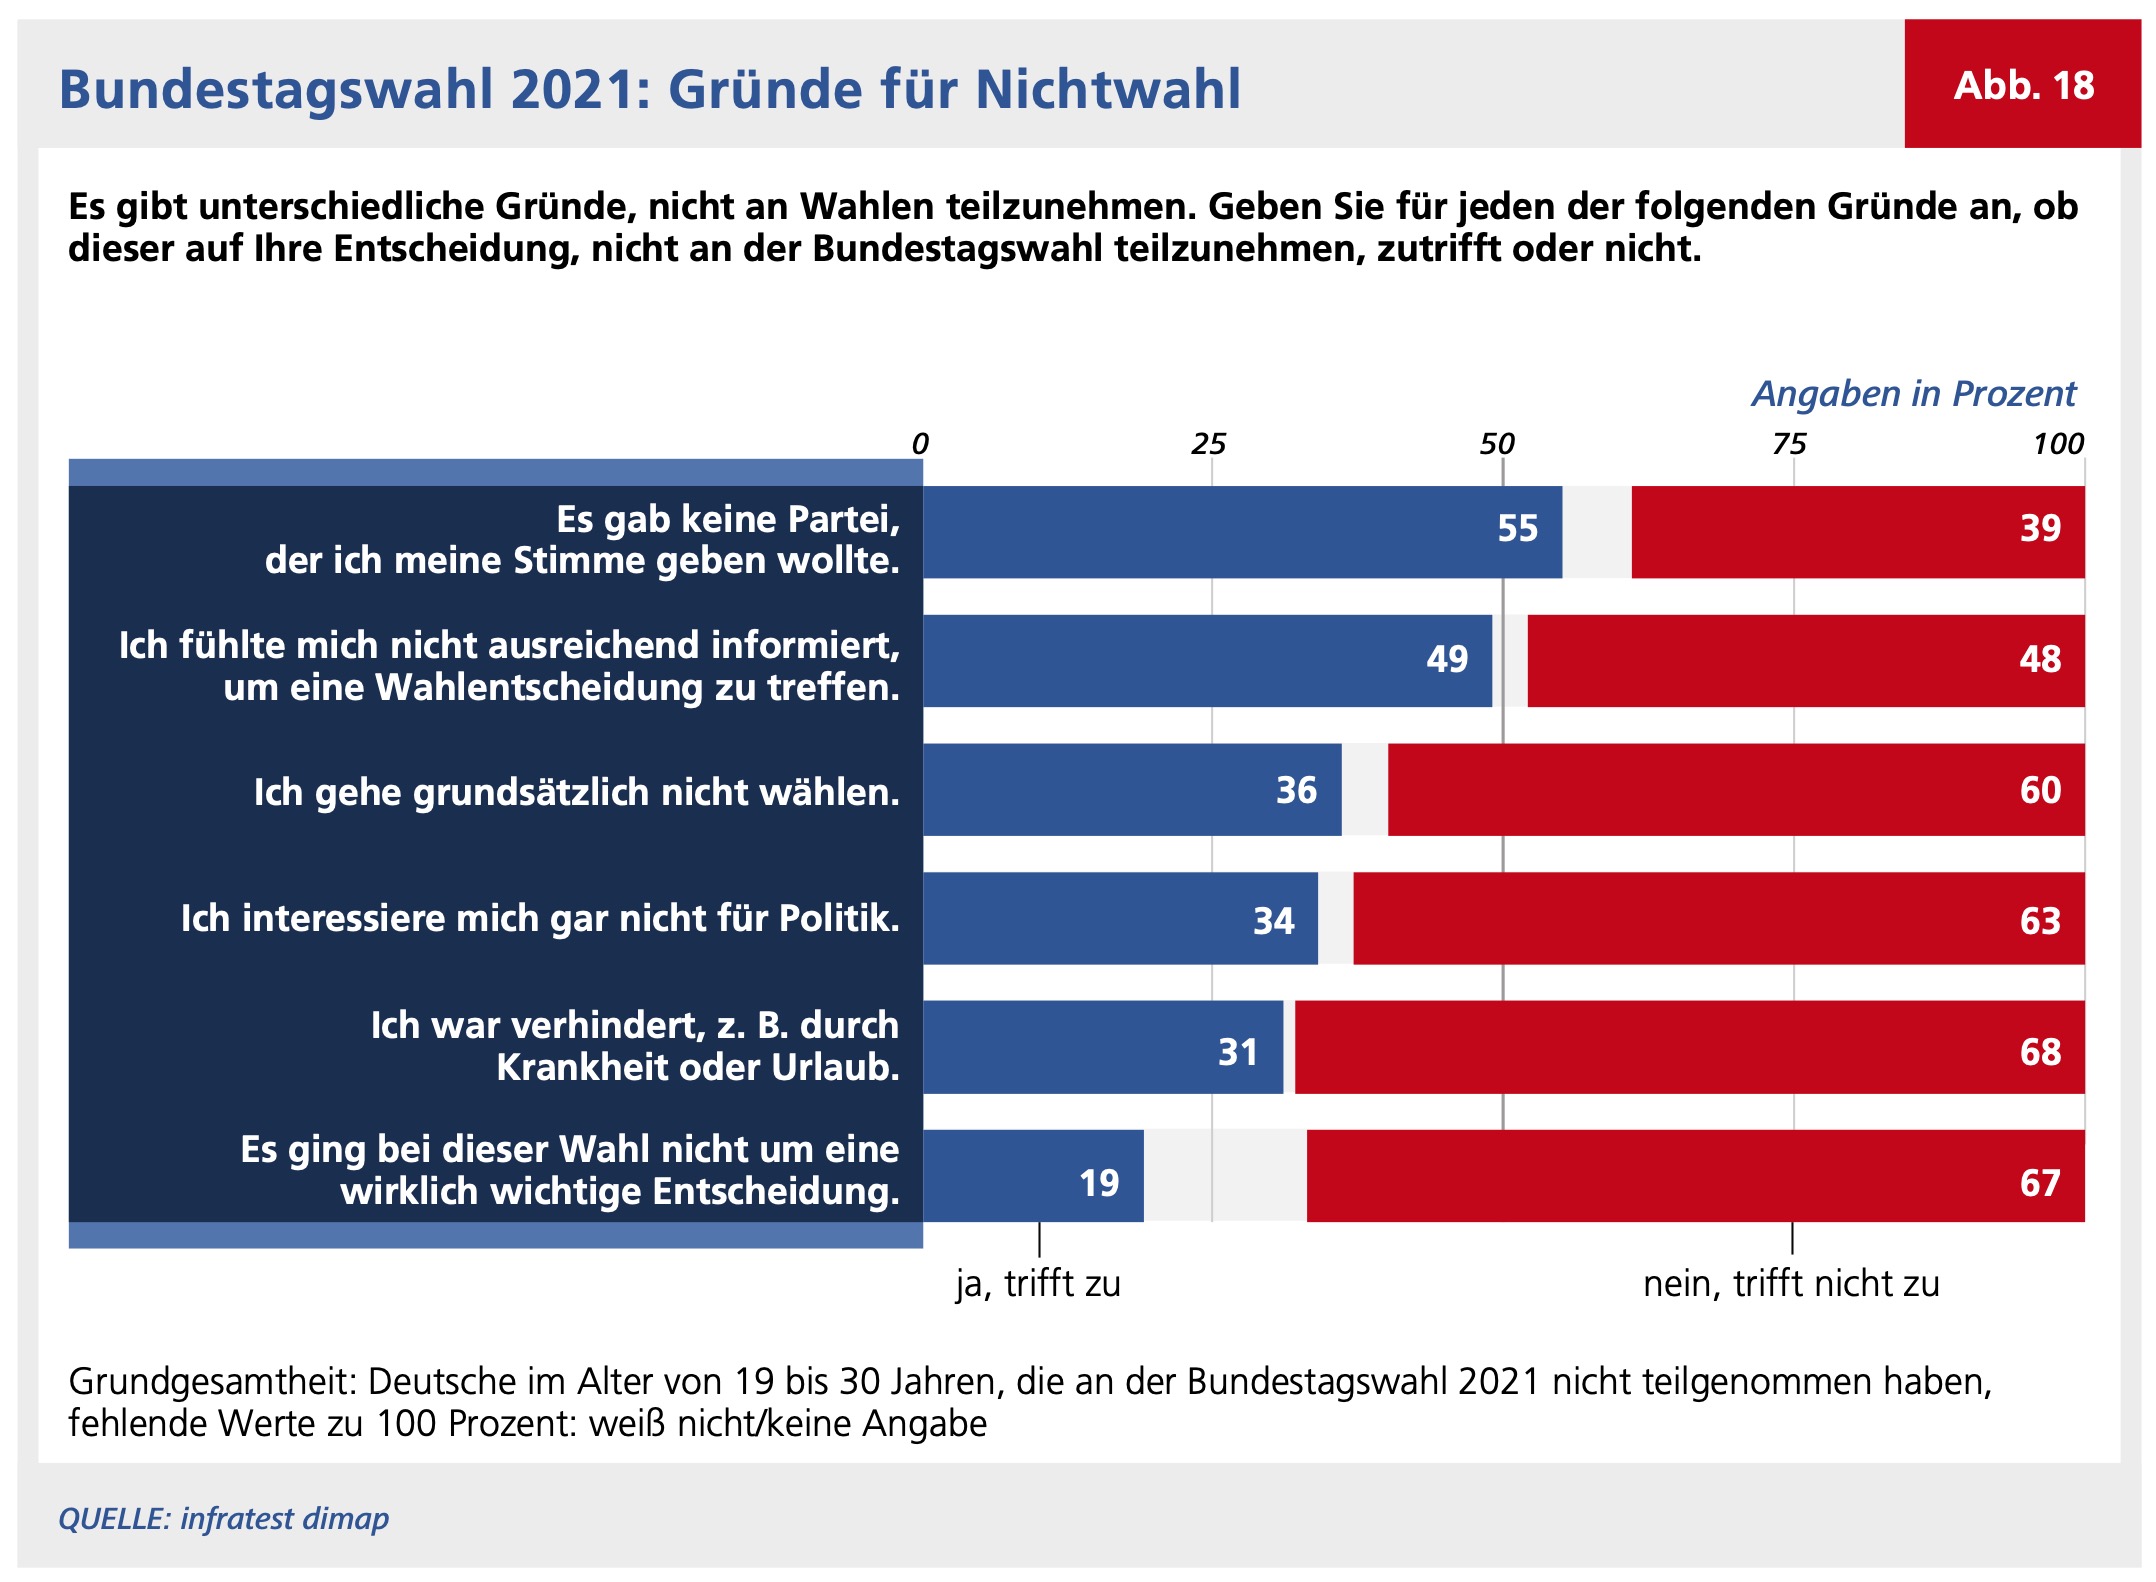 Abbildung 18 zeigt die Gründe für das Nichtwählen bei der Bundestagswahl 2021